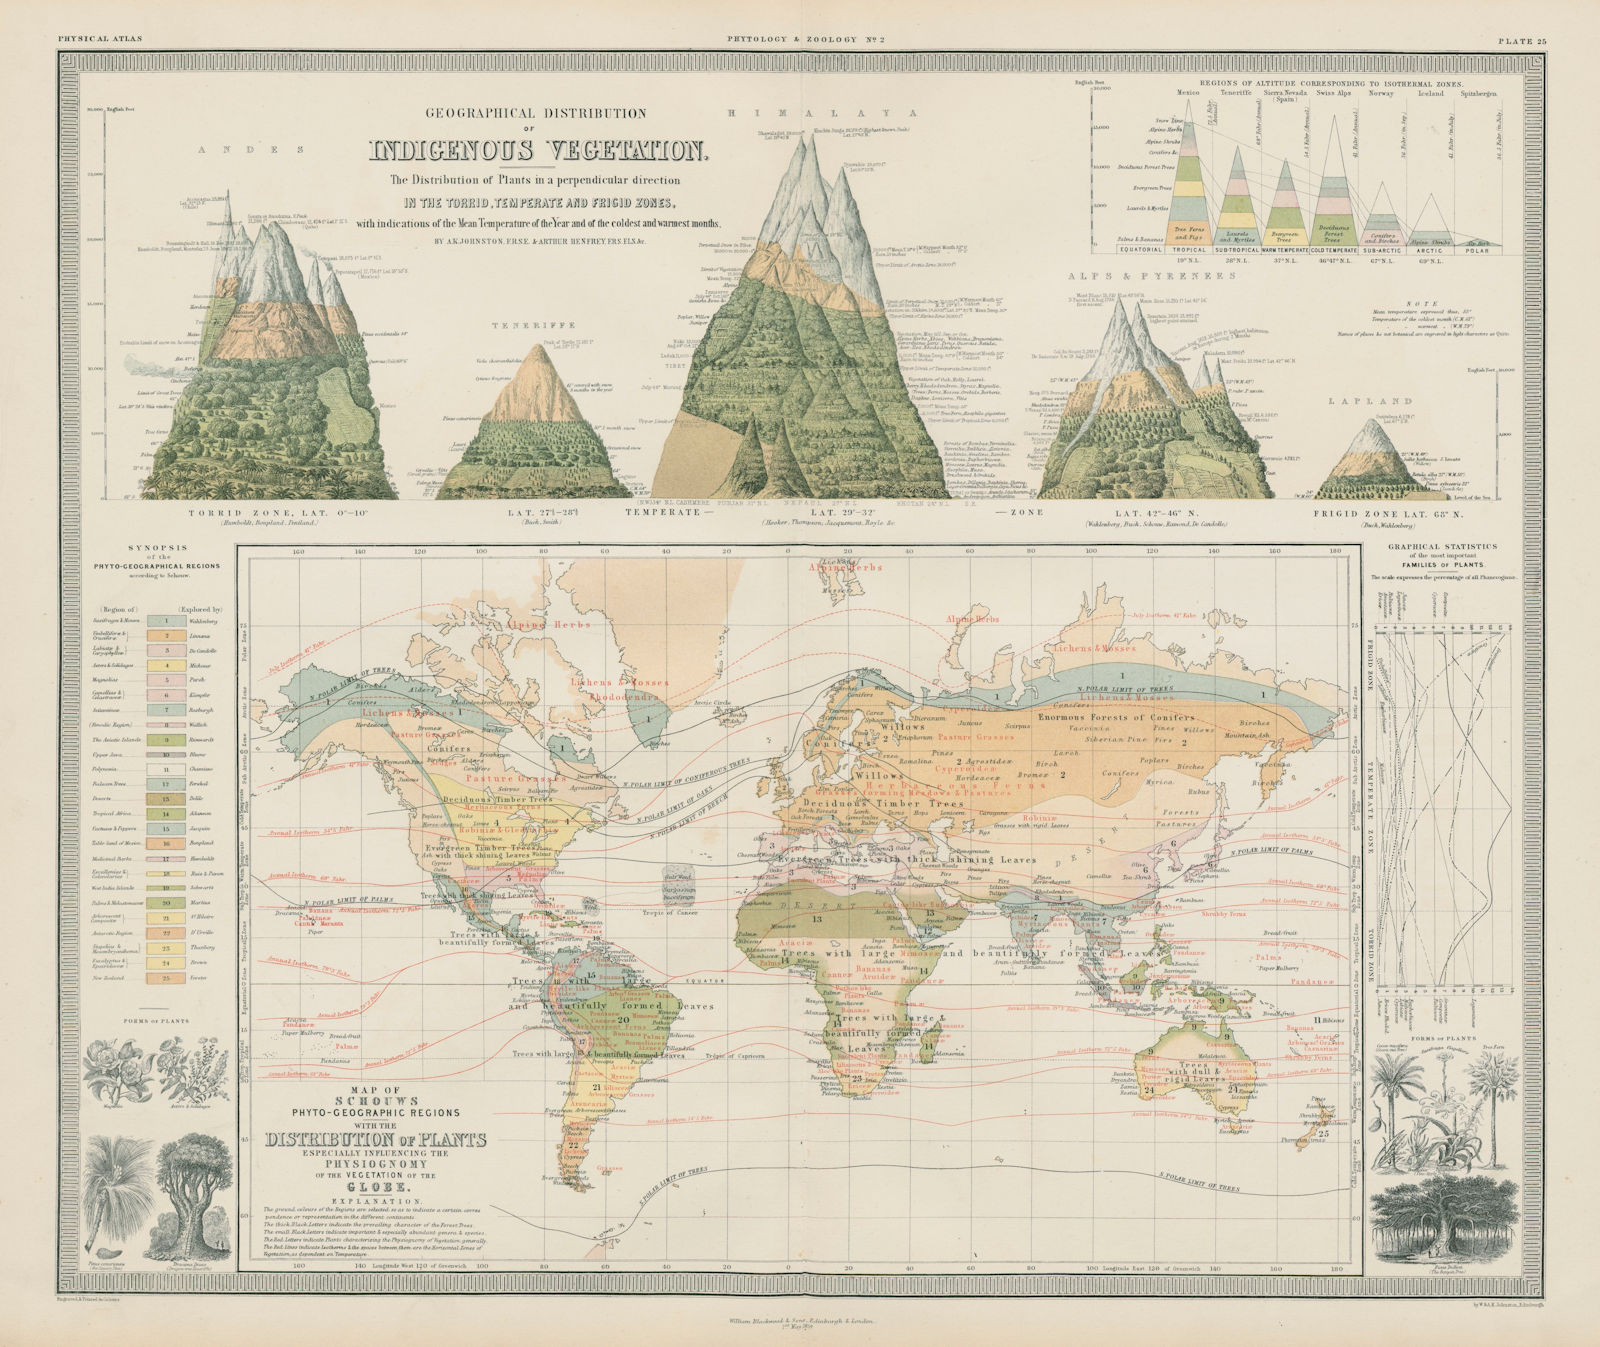 Indigenous vegetation vertical distribution. World plant distribution 1856 map